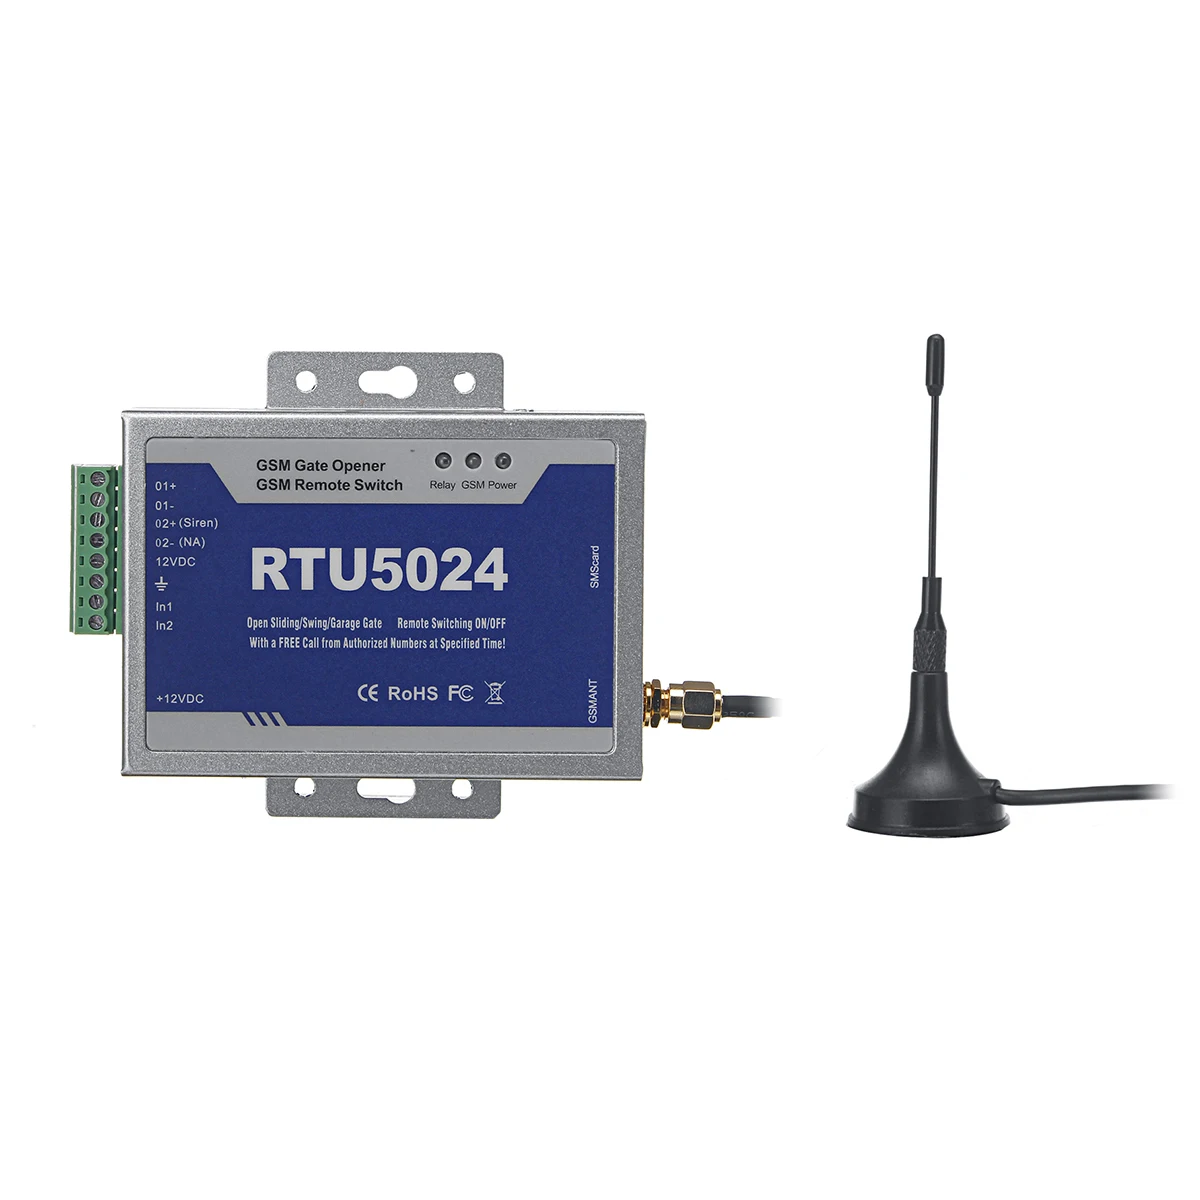 RTU5024 GSM Открыватель ворот реле беспроводной пульт дистанционного управления дверной доступ с антенной 300 см обновленный комплект для парковочных систем